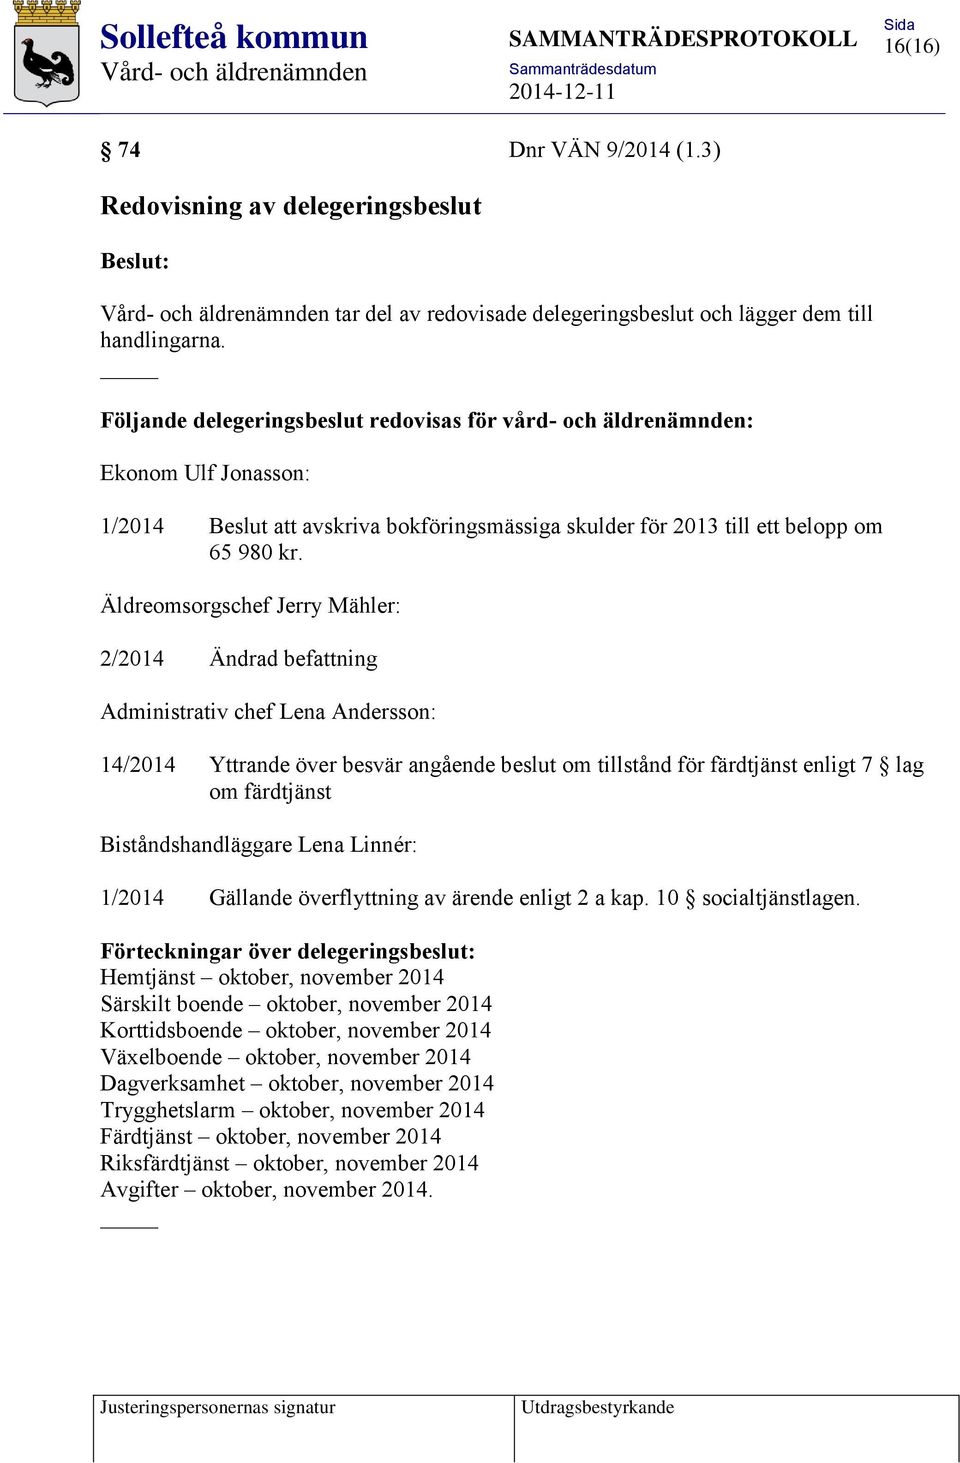 Äldreomsorgschef Jerry Mähler: 2/2014 Ändrad befattning Administrativ chef Lena Andersson: 14/2014 Yttrande över besvär angående beslut om tillstånd för färdtjänst enligt 7 lag om färdtjänst